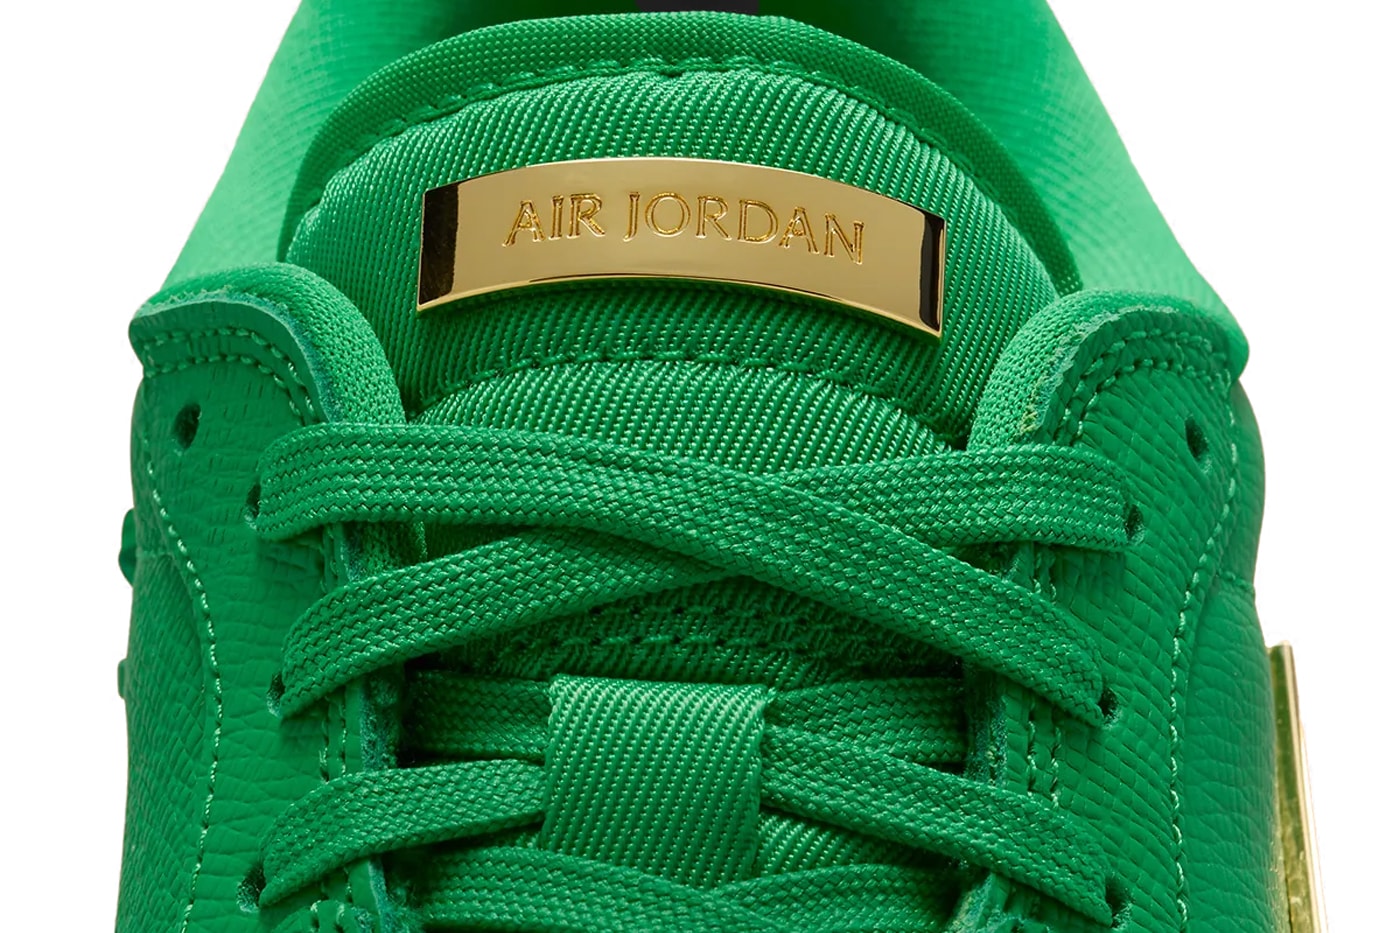 Air Jordan 1 Low MM Surfaces in a Bottega Green-Inspired Hue aj1 low method of make luxury handbags jordan brand michael jordan nike swoosh low top